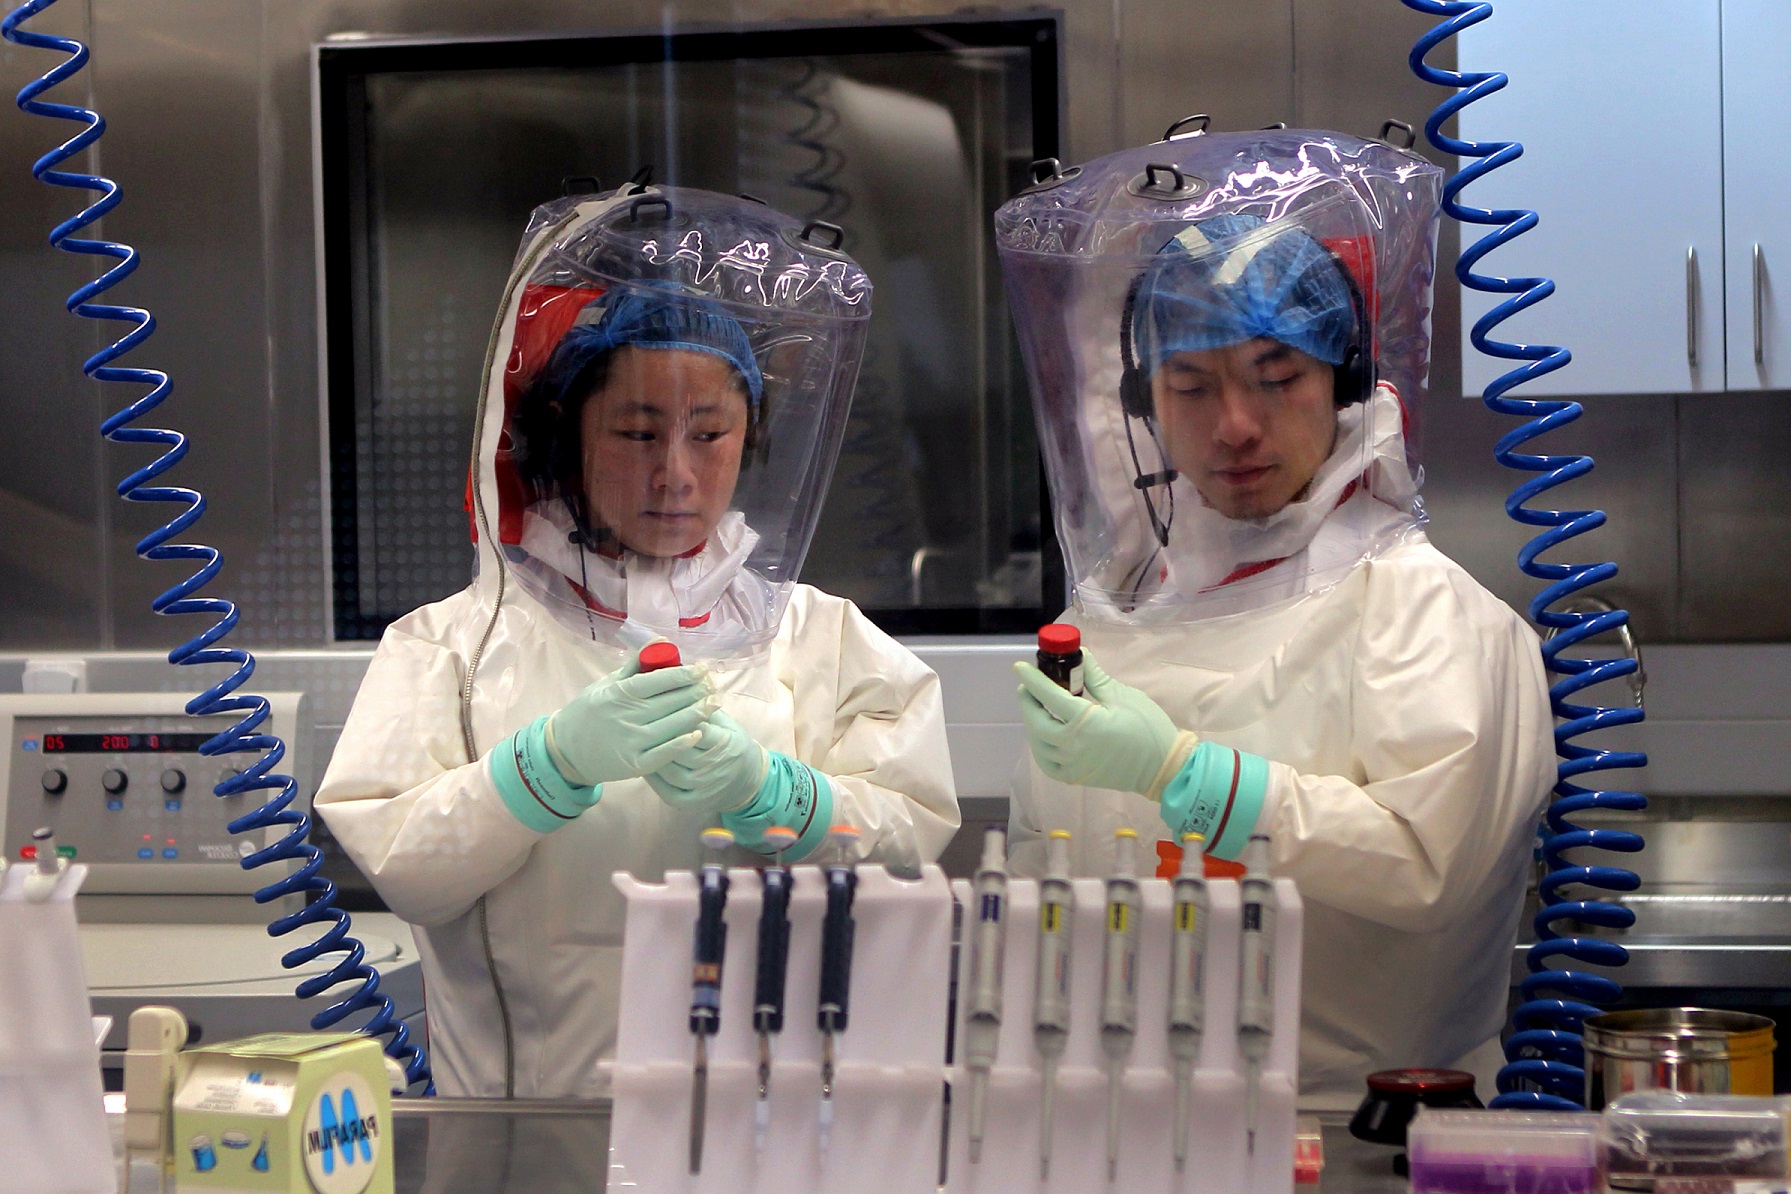 Le Japon confirme un cas d’infection au 2019-nCov